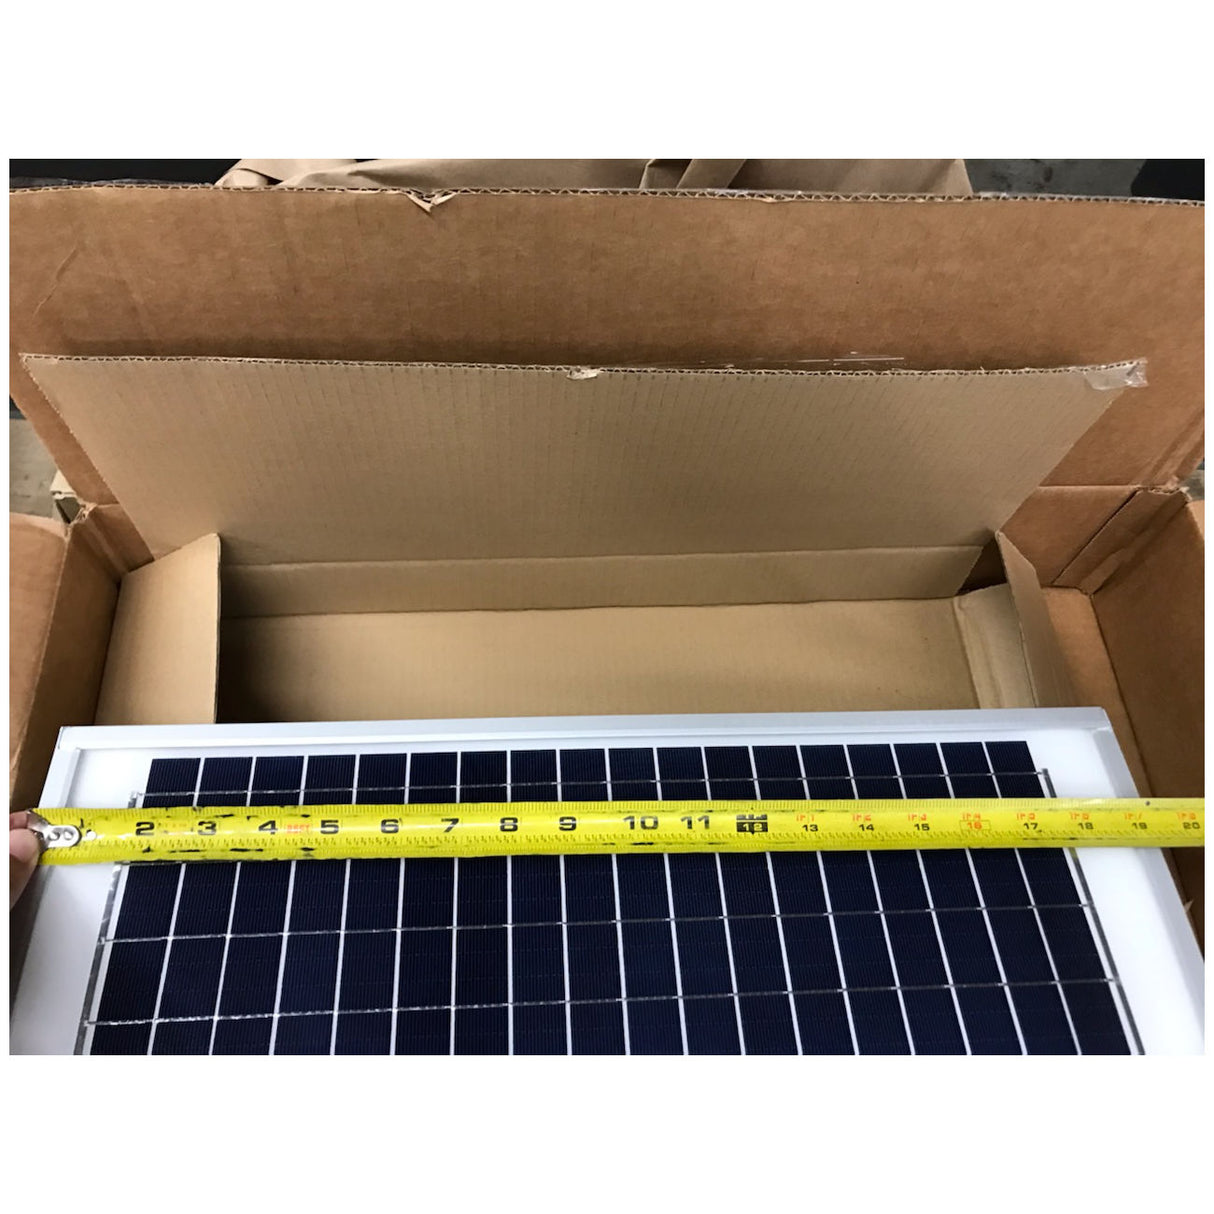 Elite 20w Solar Panel height measurements